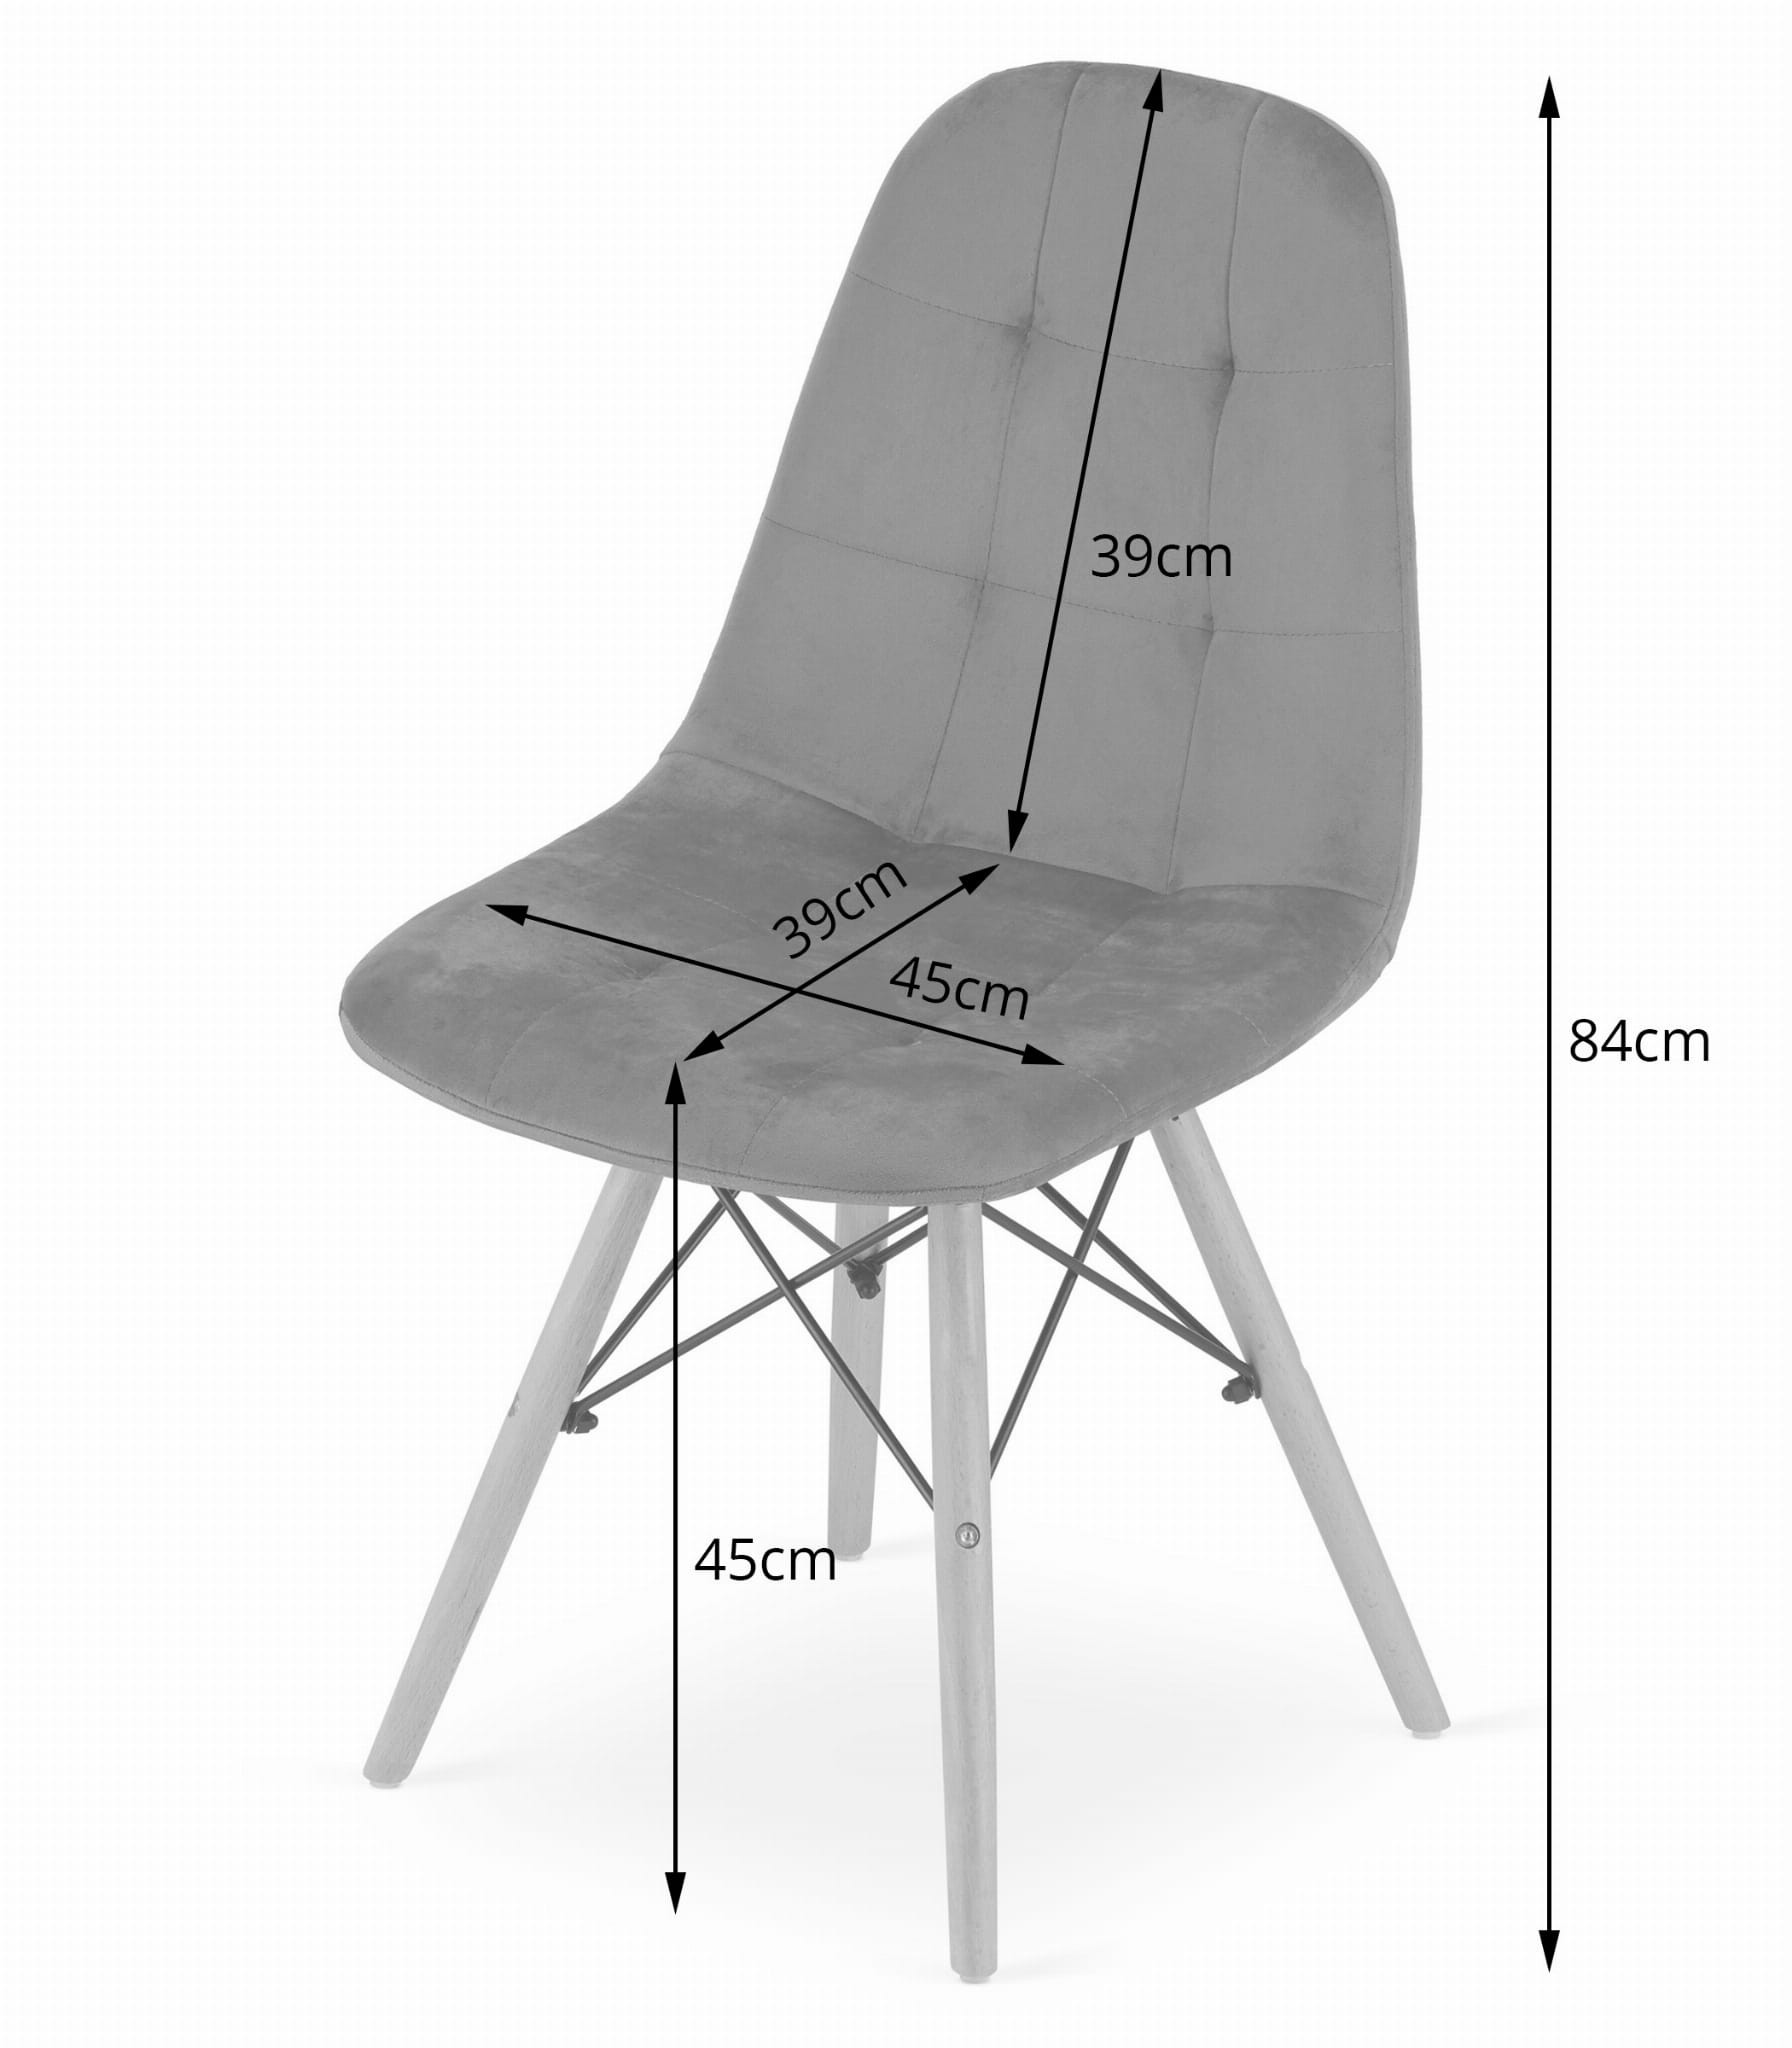 Jídelní židle DUMO samet - černá (hnědé nohy)